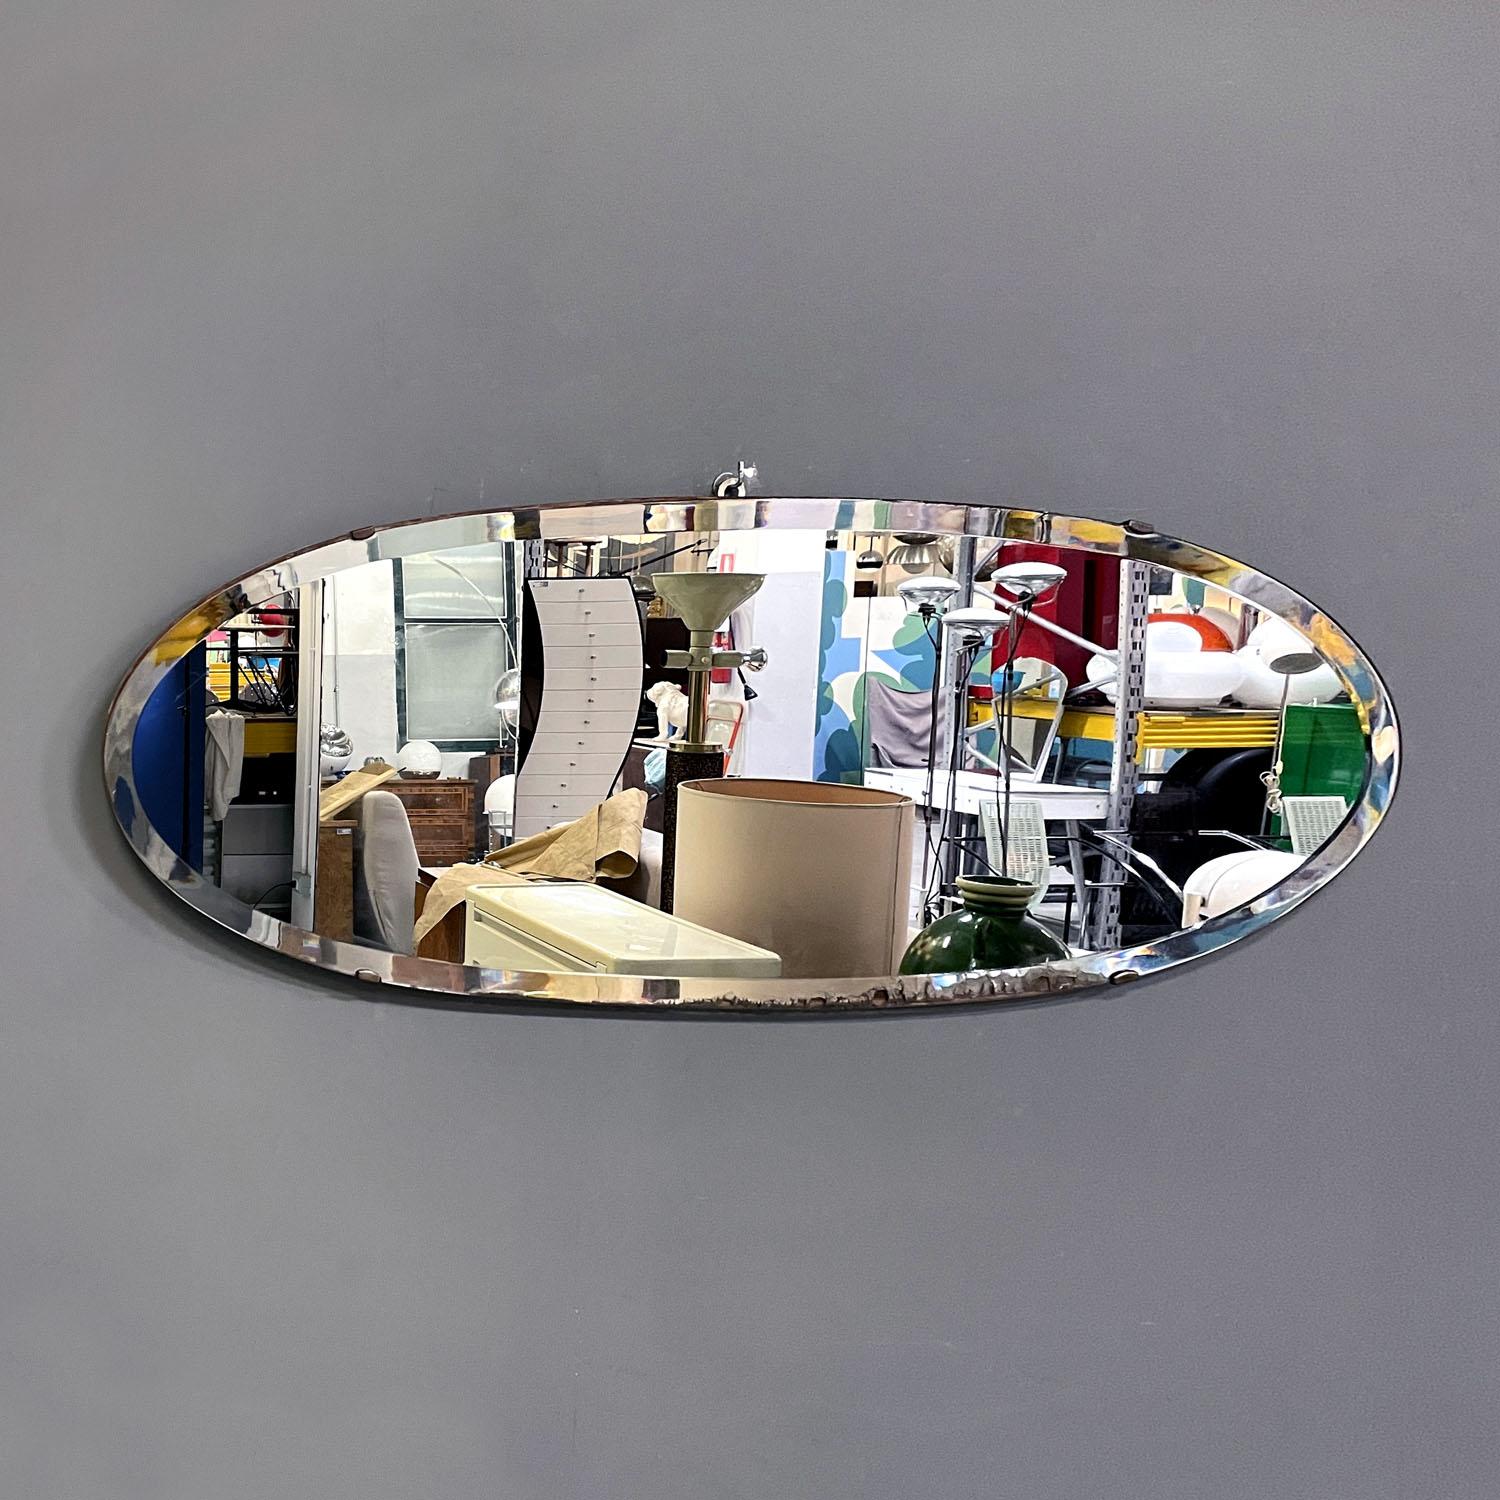 Miroir mural ovale italien moderne du milieu du siècle dernier, années 1950
Miroir mural de forme ovale. Il présente une inclinaison décorative sur toute sa circonférence. La base de support est en bois et soutient et fixe le miroir à l'aide de